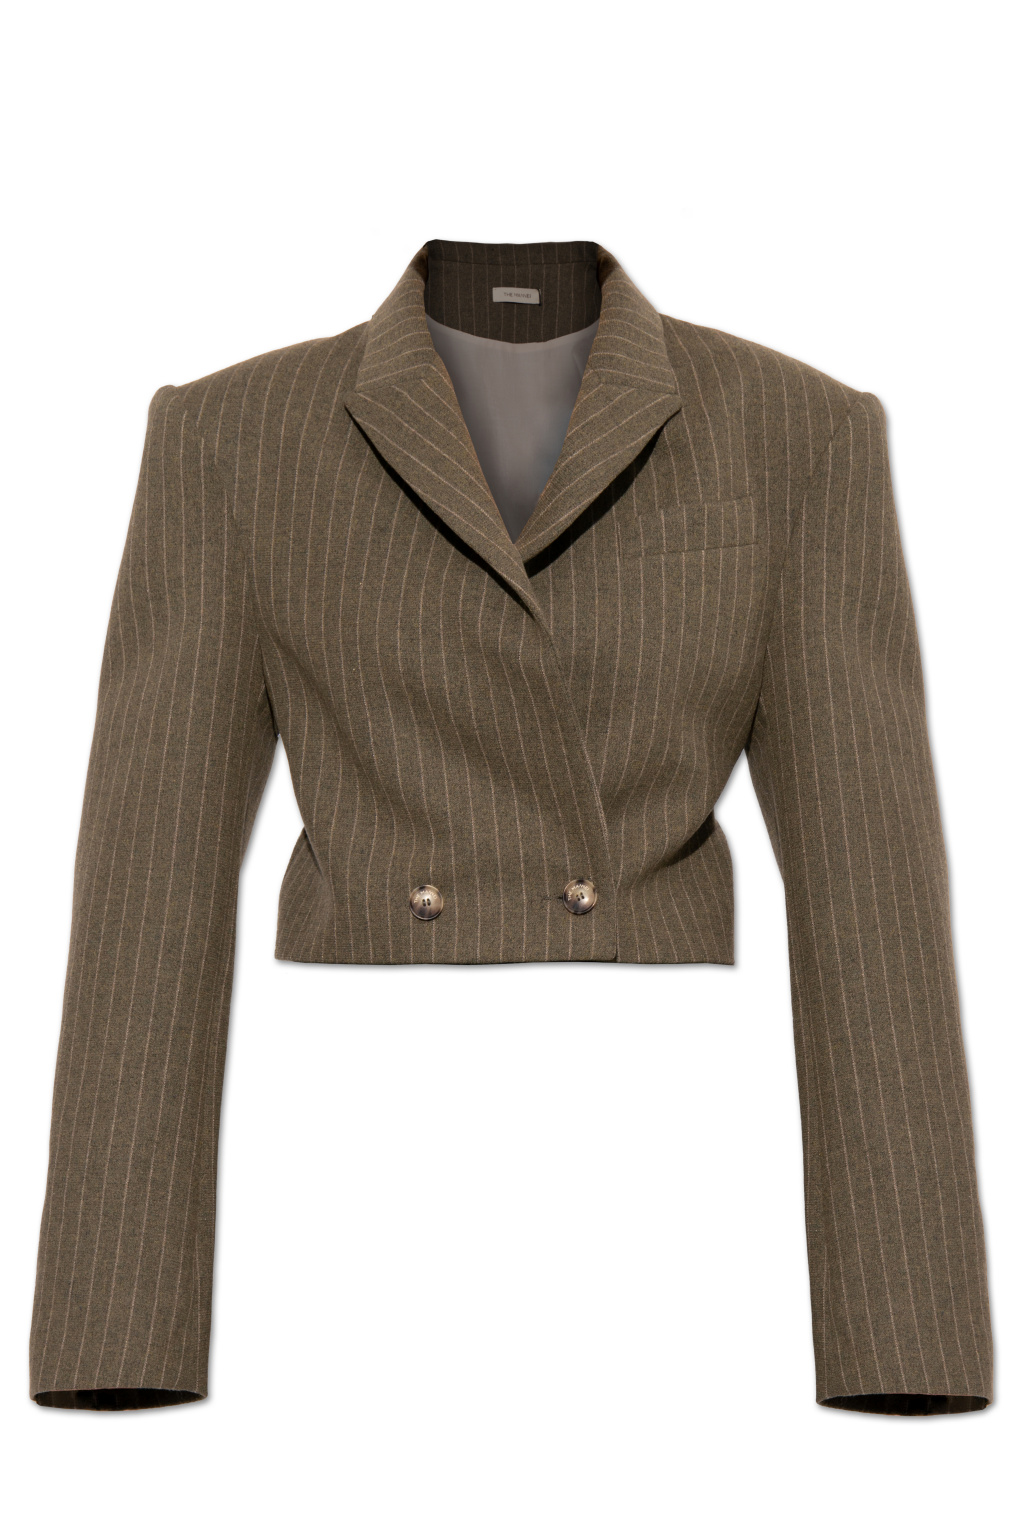 The Mannei ‘Prato’ cropped blazer